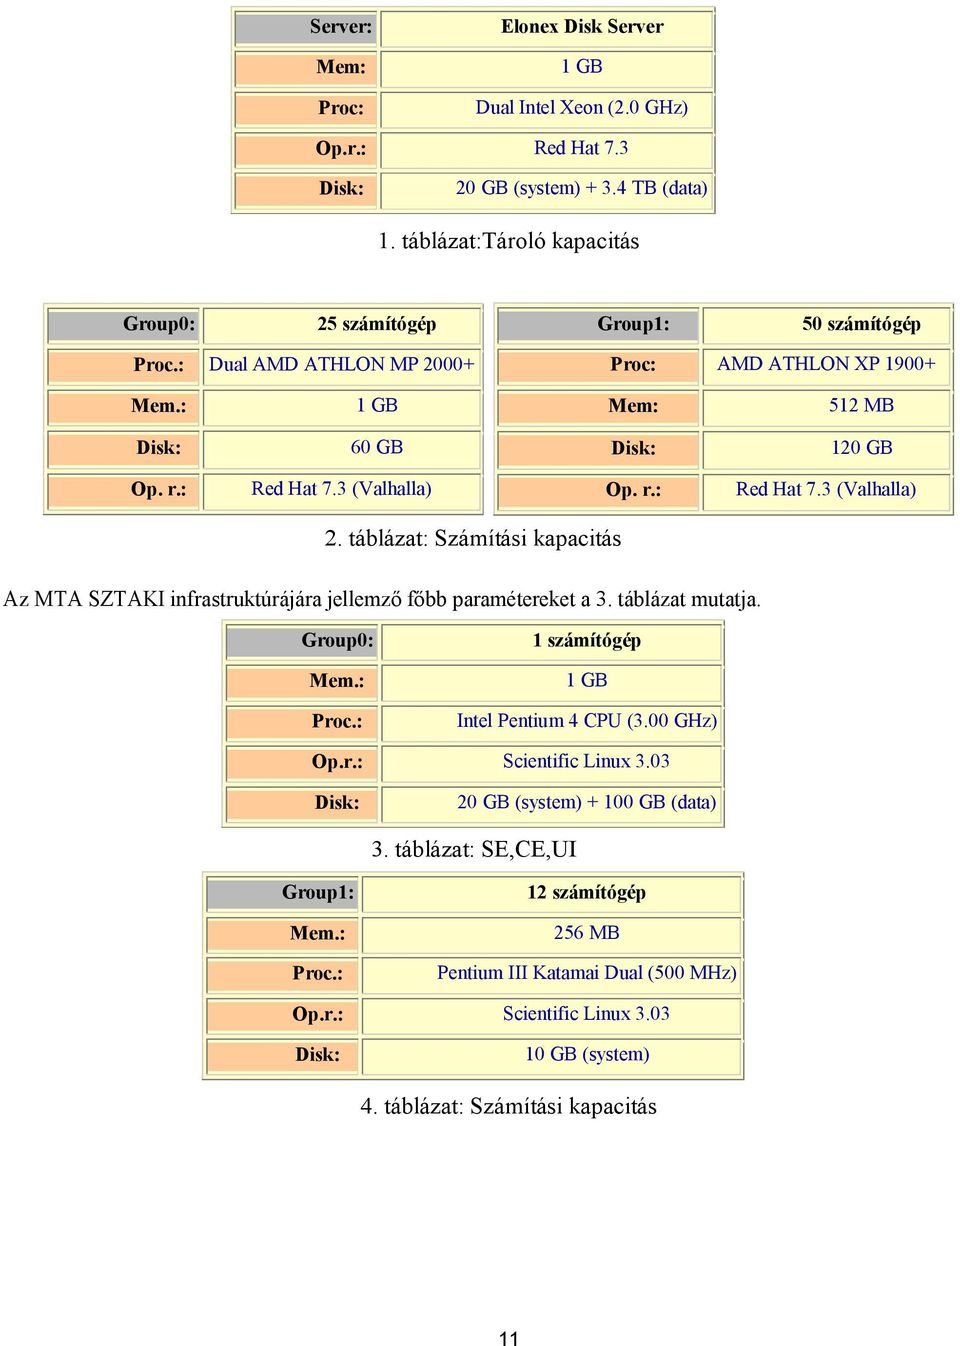 3 (Valhalla) Op. r.: Red Hat 7.3 (Valhalla) 2. táblázat: Számítási kapacitás Az MTA SZTAKI infrastruktúrájára jellemző főbb paramétereket a 3. táblázat mutatja. Group0: Mem.: Proc.